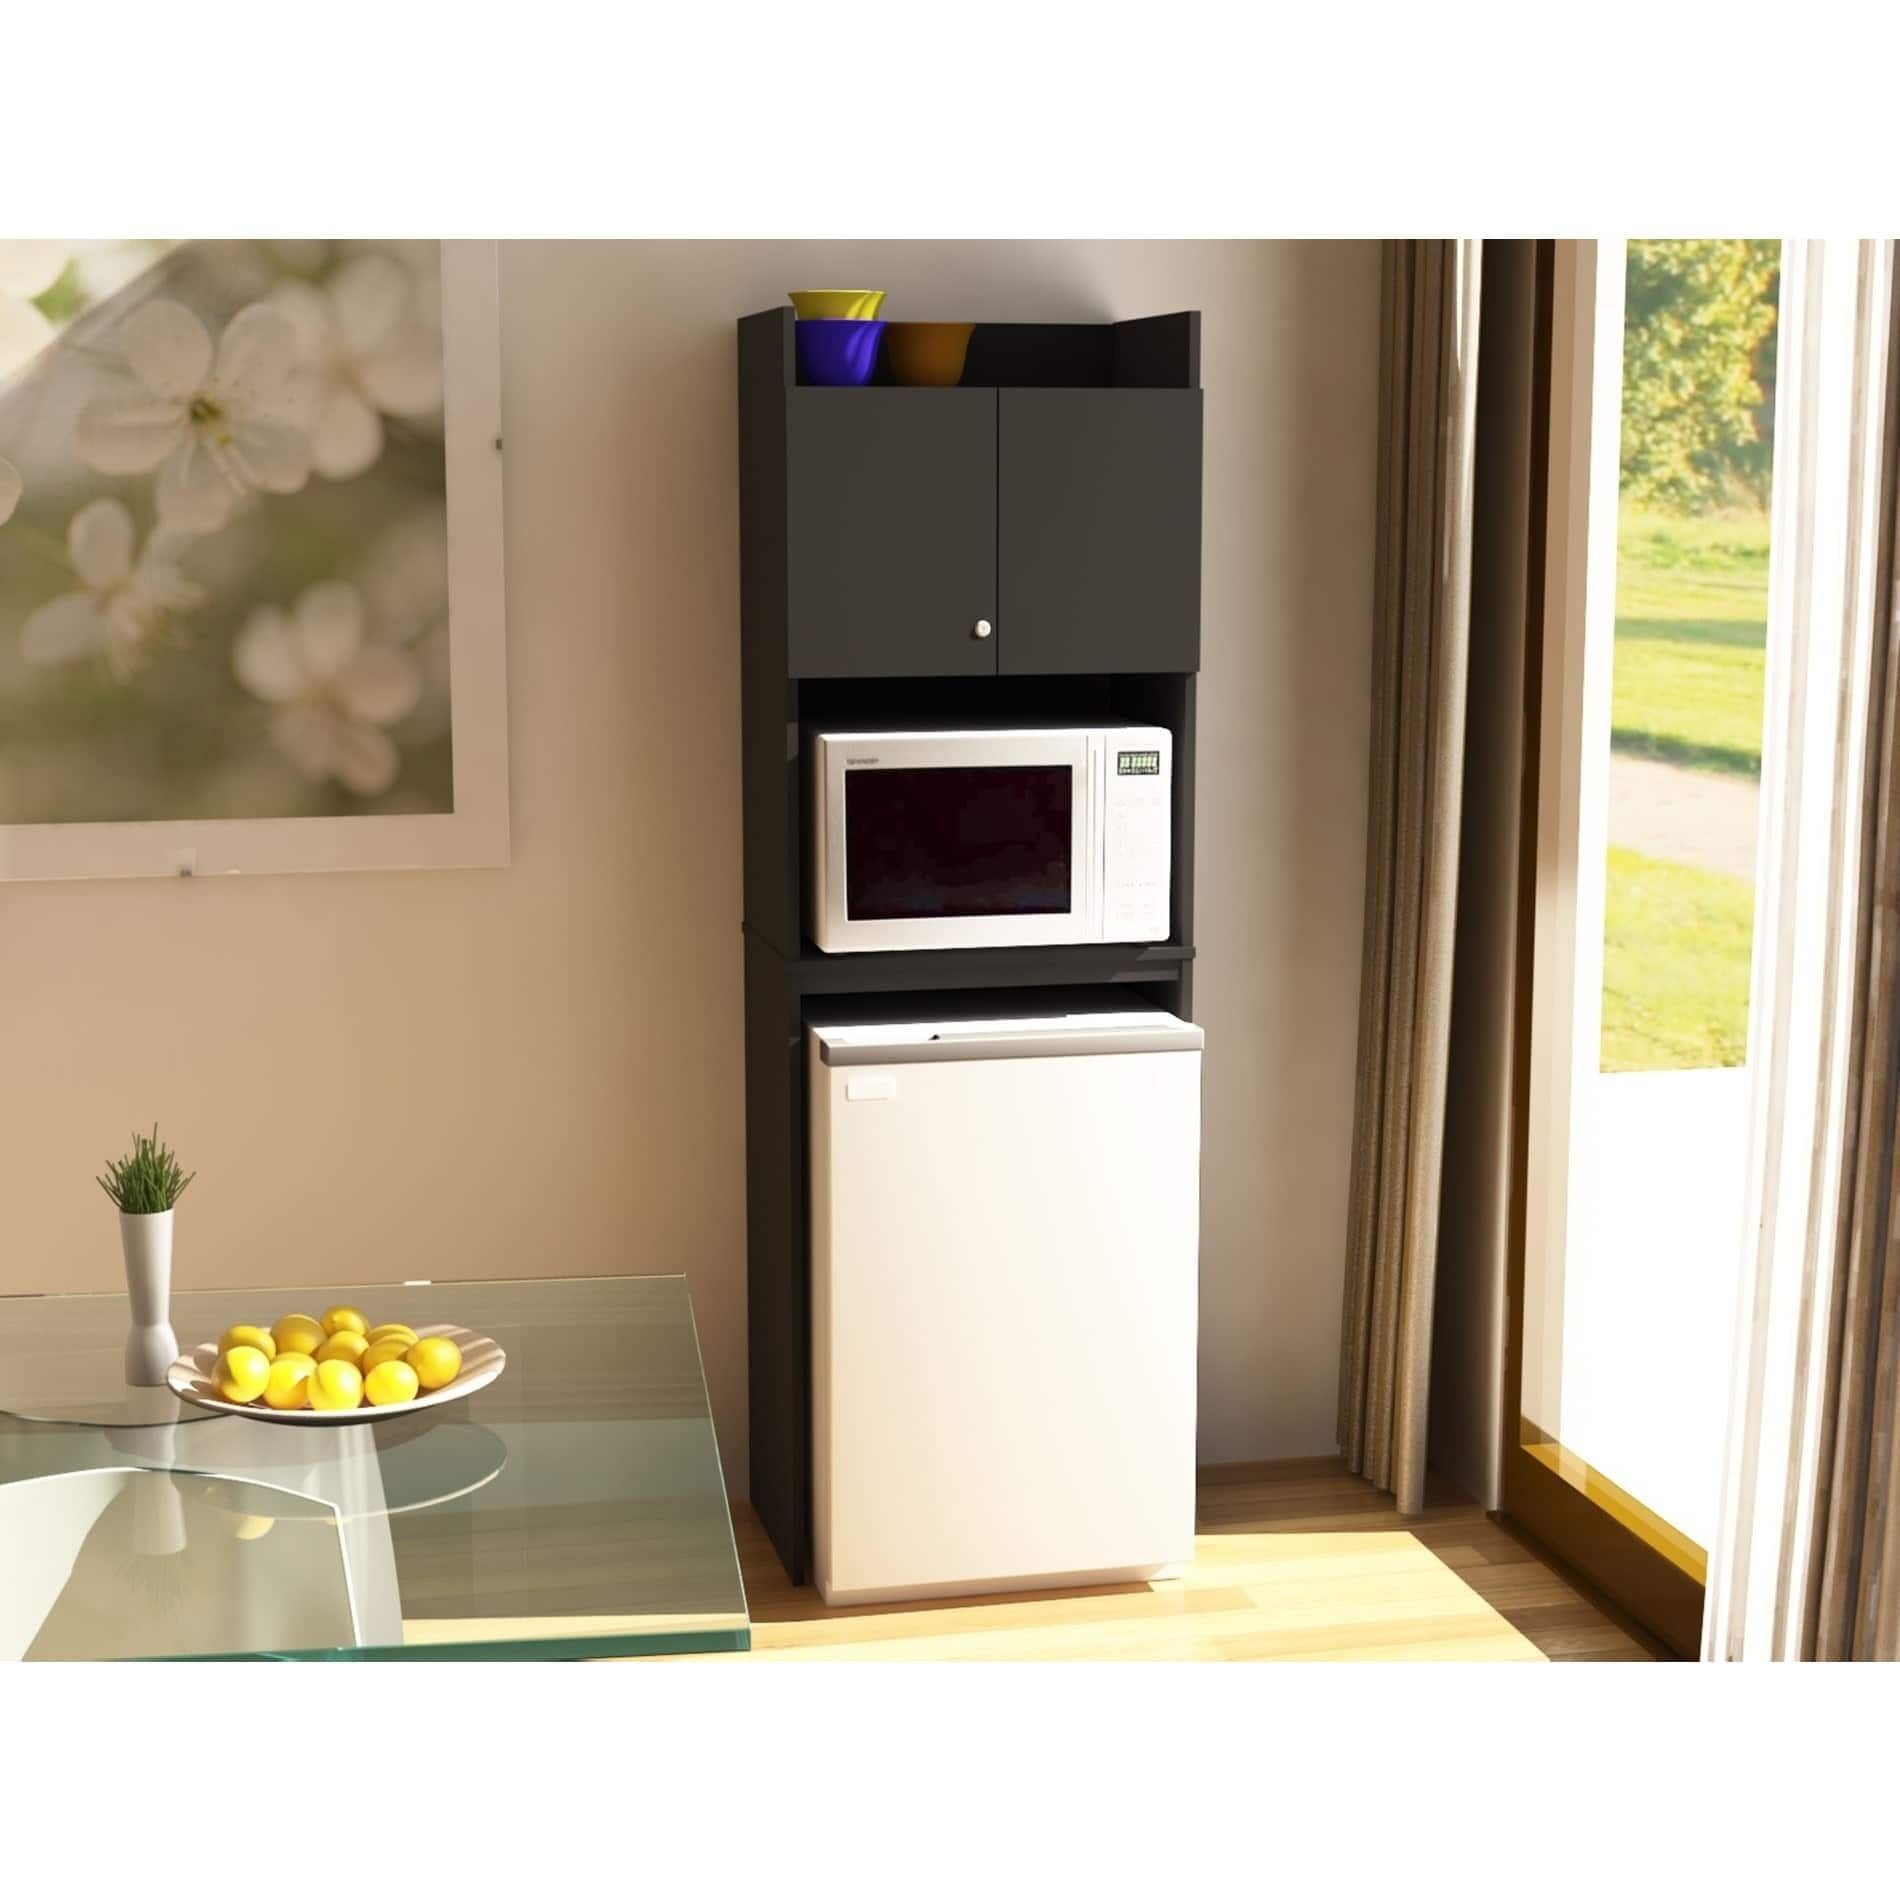 Можно ли ставить микроволновку на холодильник сверху. Шкаф для микроволновки и кофемашины. Холодильник с микроволновкой. Микроволновая печь на холодильнике. Шкаф под микроволновку.